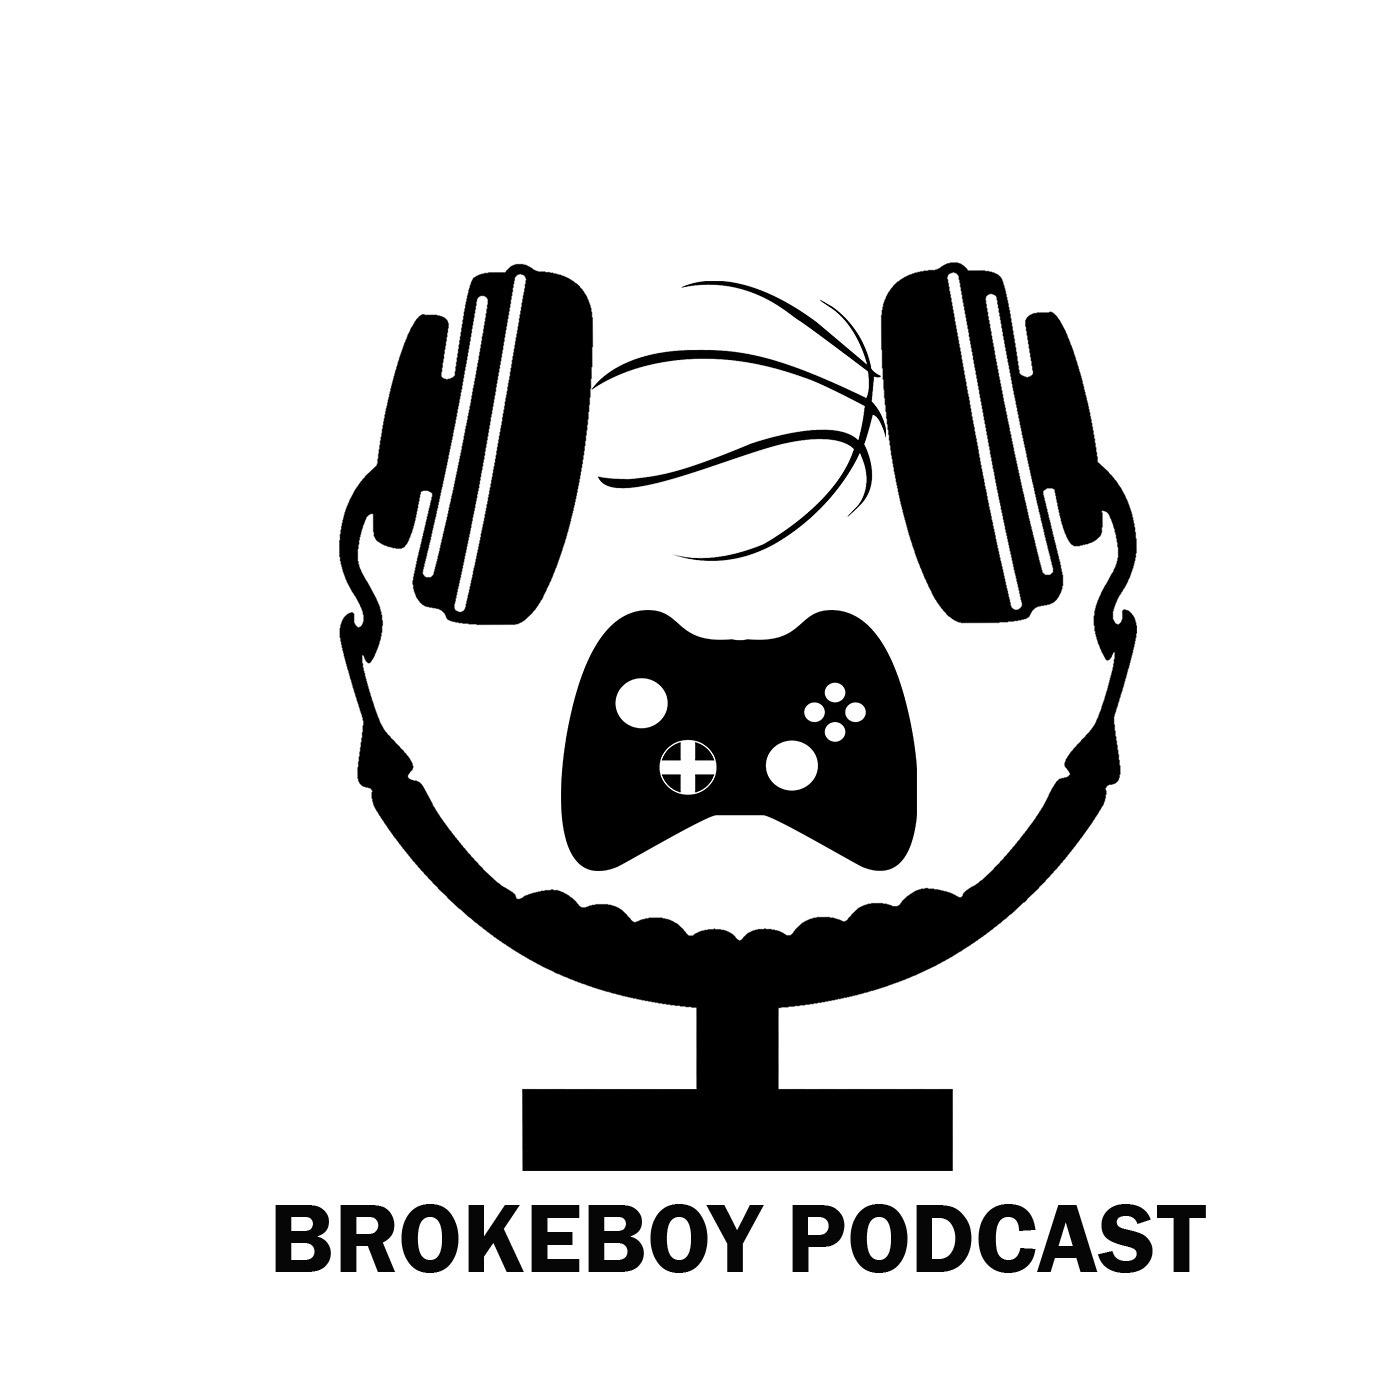 BrokeBoy Podcast